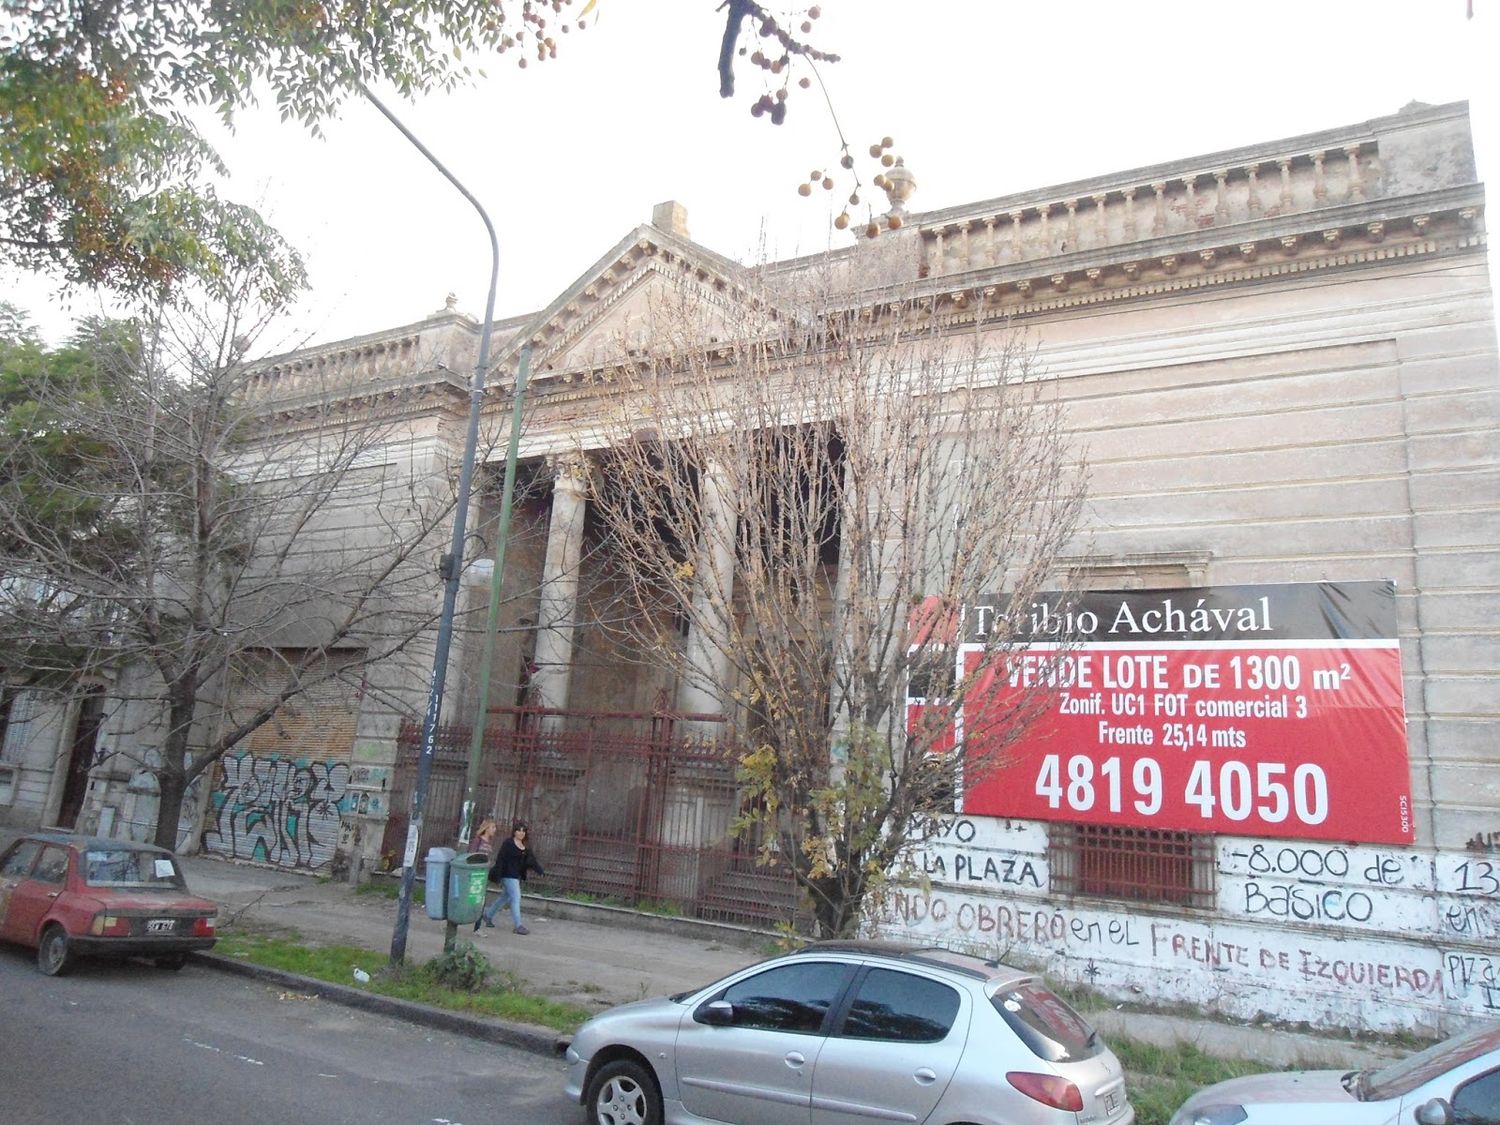 La Plata: Buscan expropiar el deteriorado Teatro Princesa